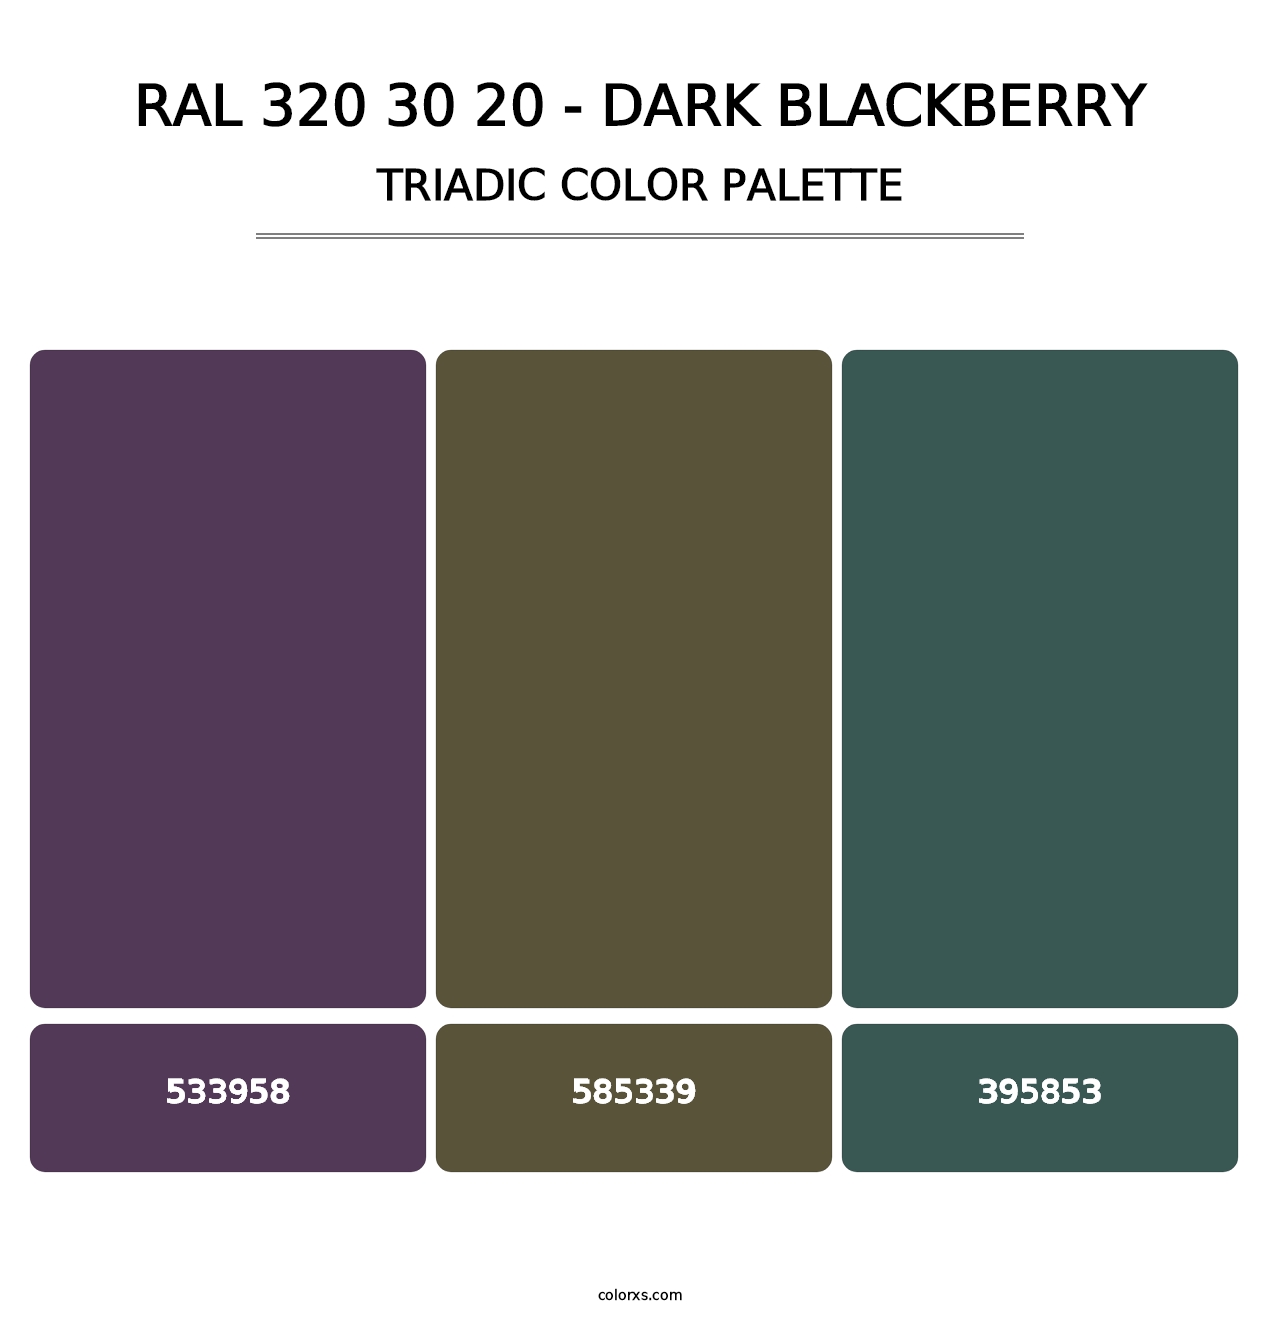 RAL 320 30 20 - Dark Blackberry - Triadic Color Palette